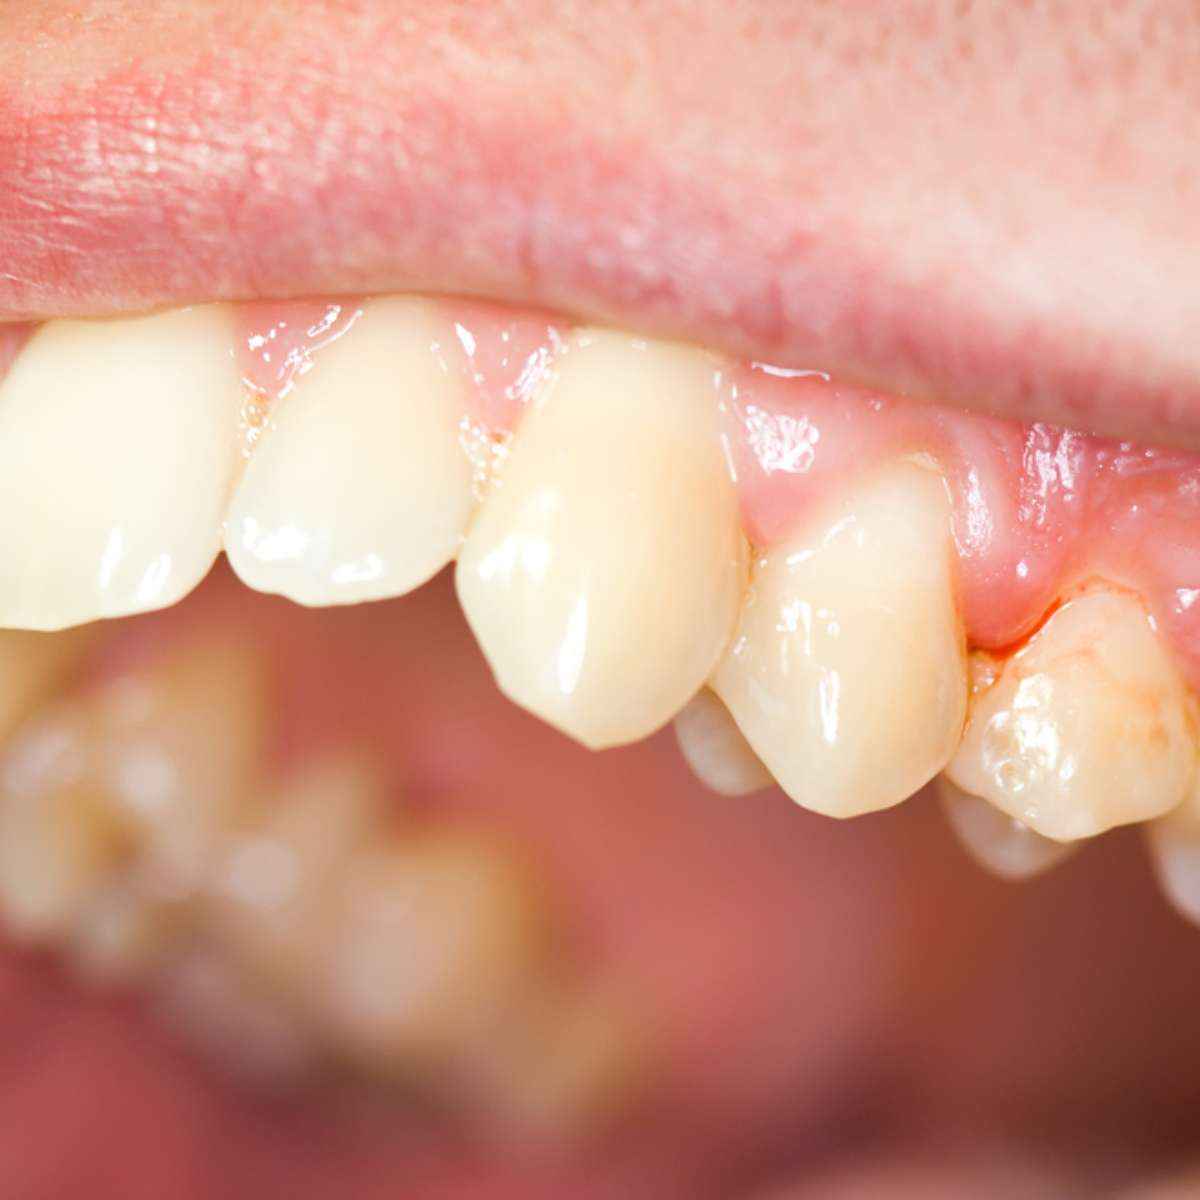  Mít sen o krvácejícím zubu: Co to znamená?